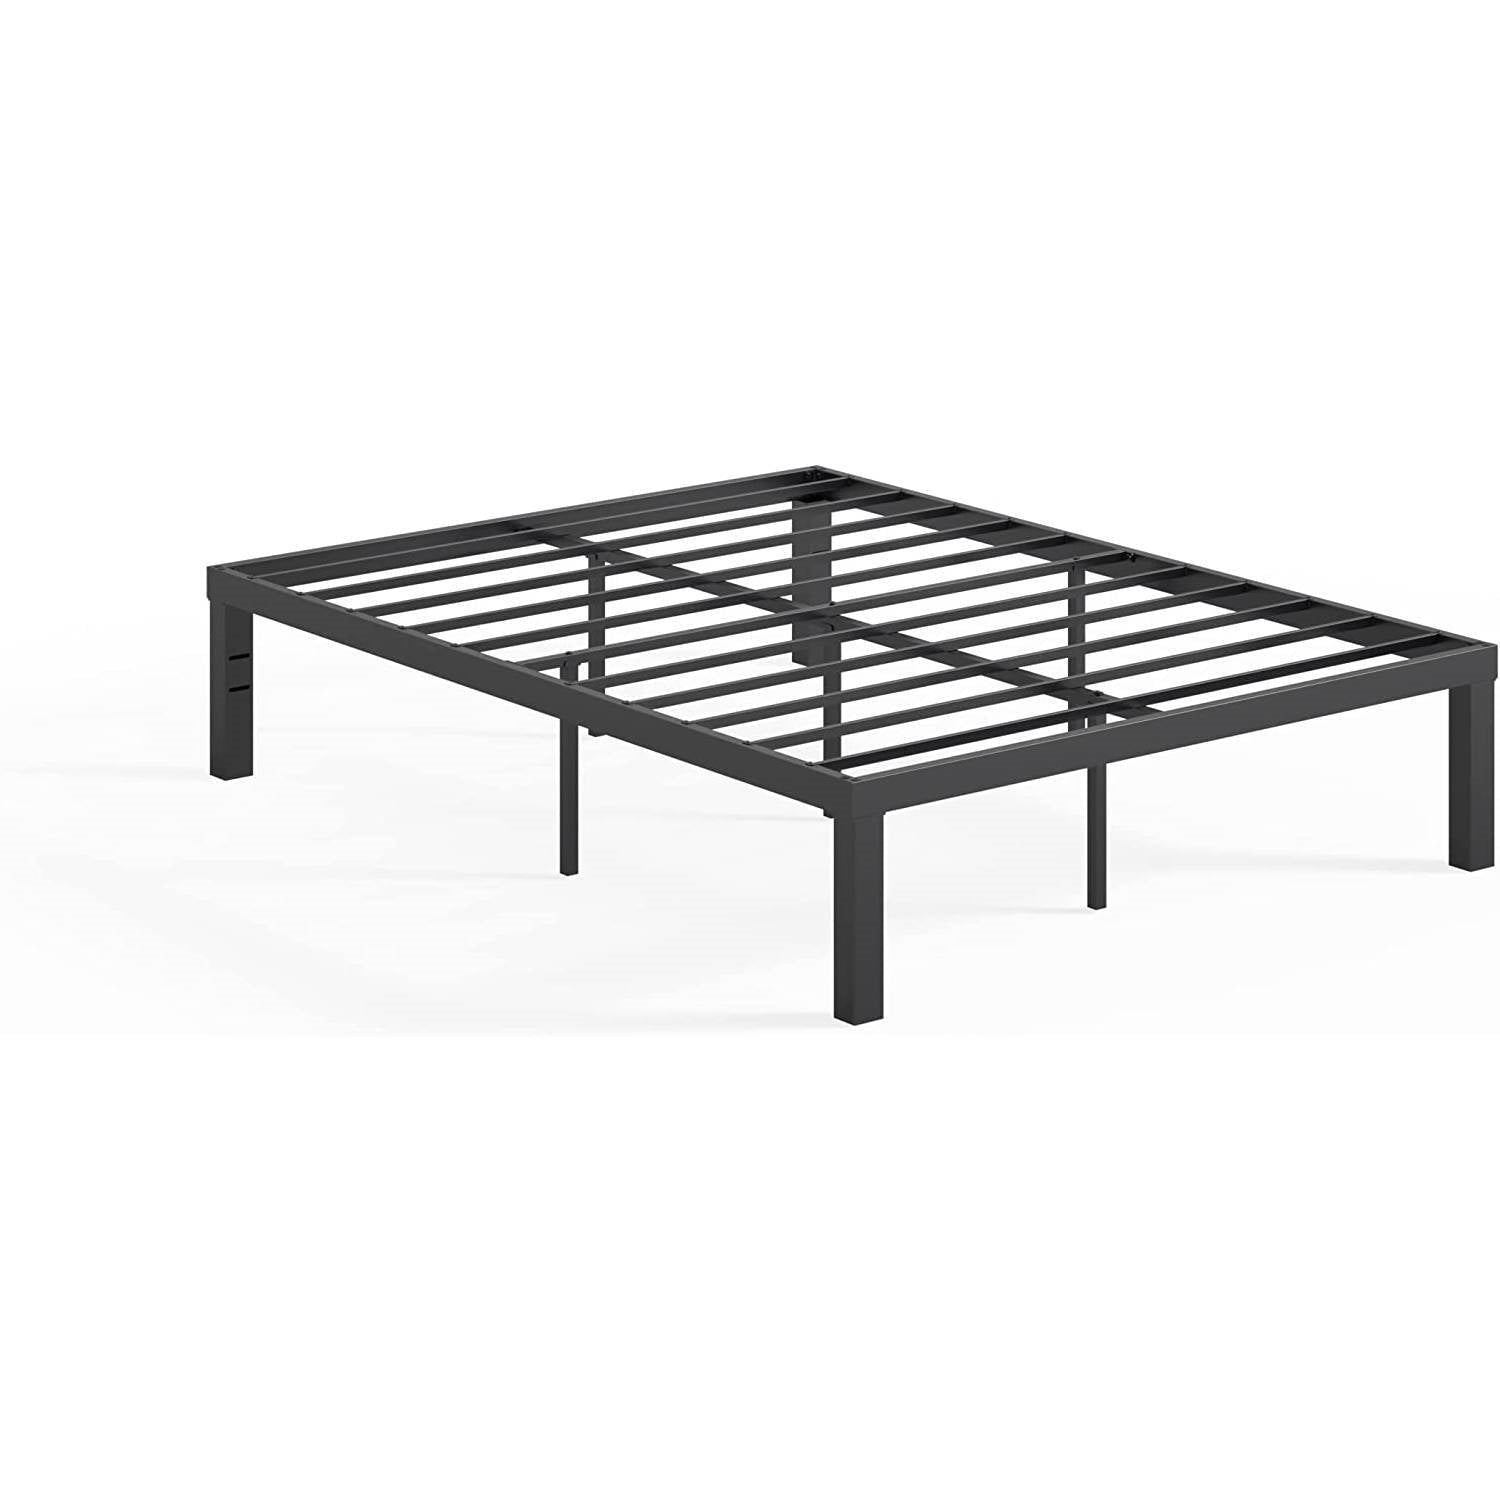 Bedroom > Bed Frames > Platform Beds - Full Size Modern 16-inch Heavy Steel Metal Platform Bed Frame